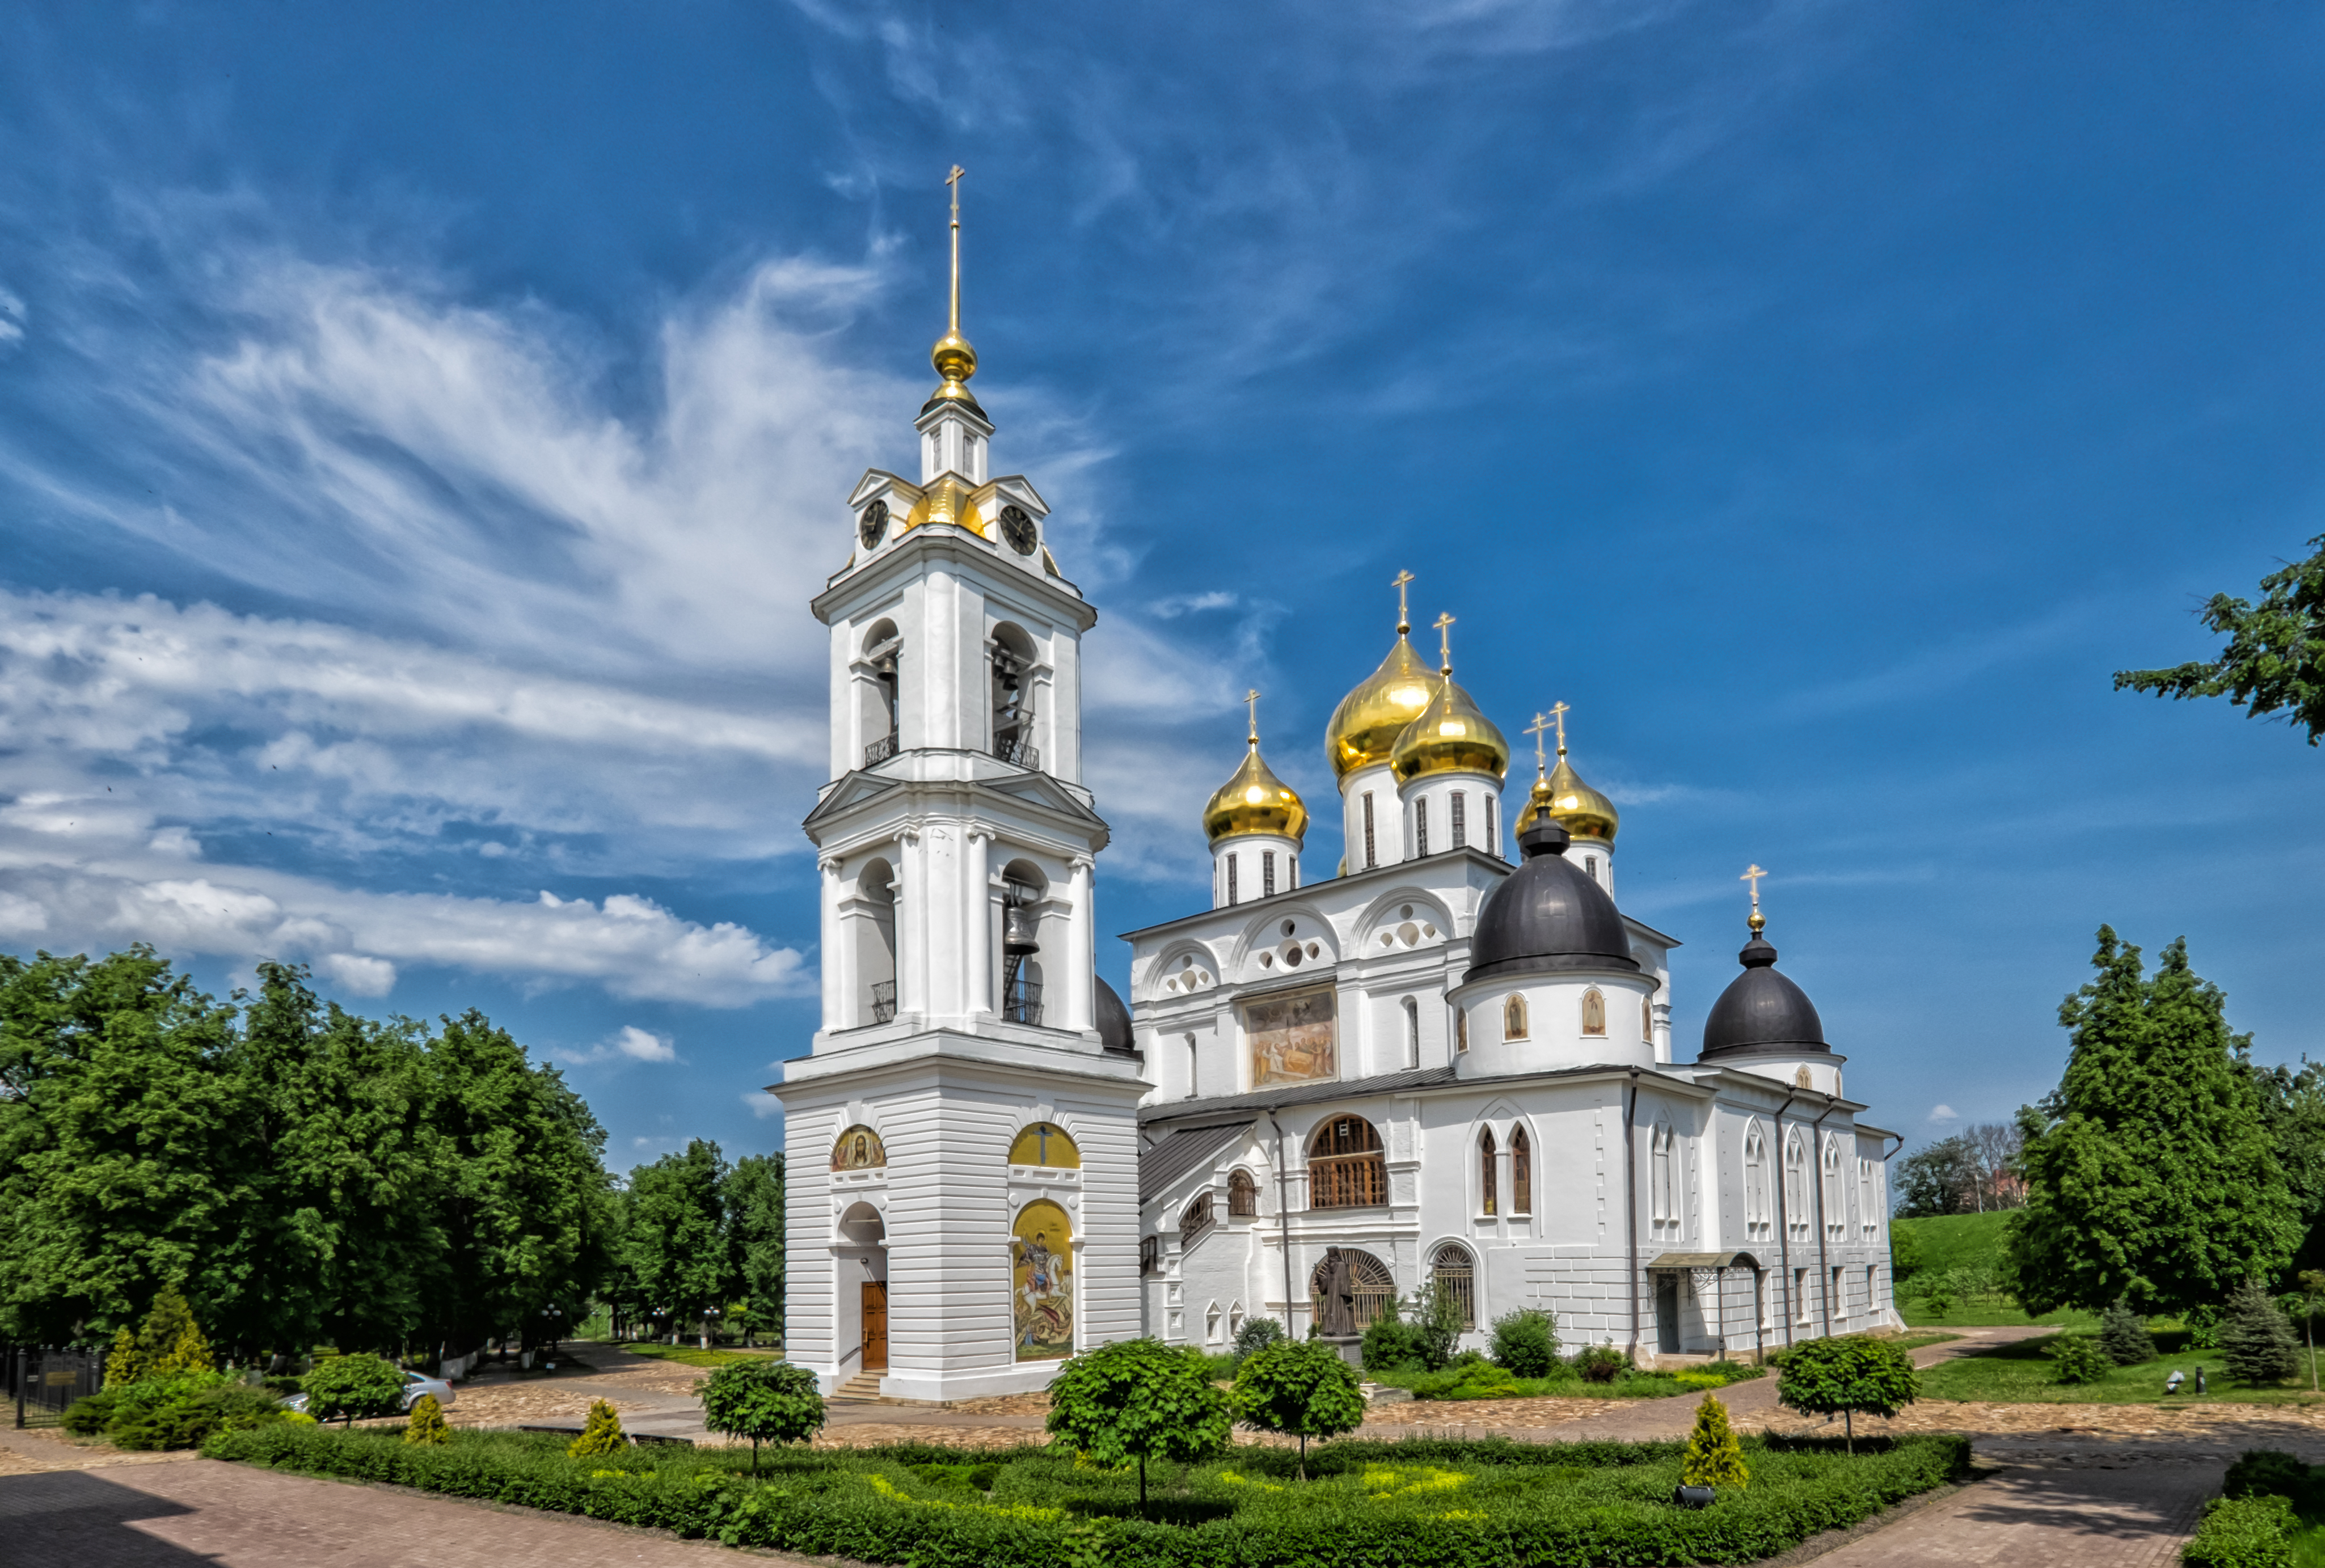 Кремлевские строения являются объектом культурного наследия России